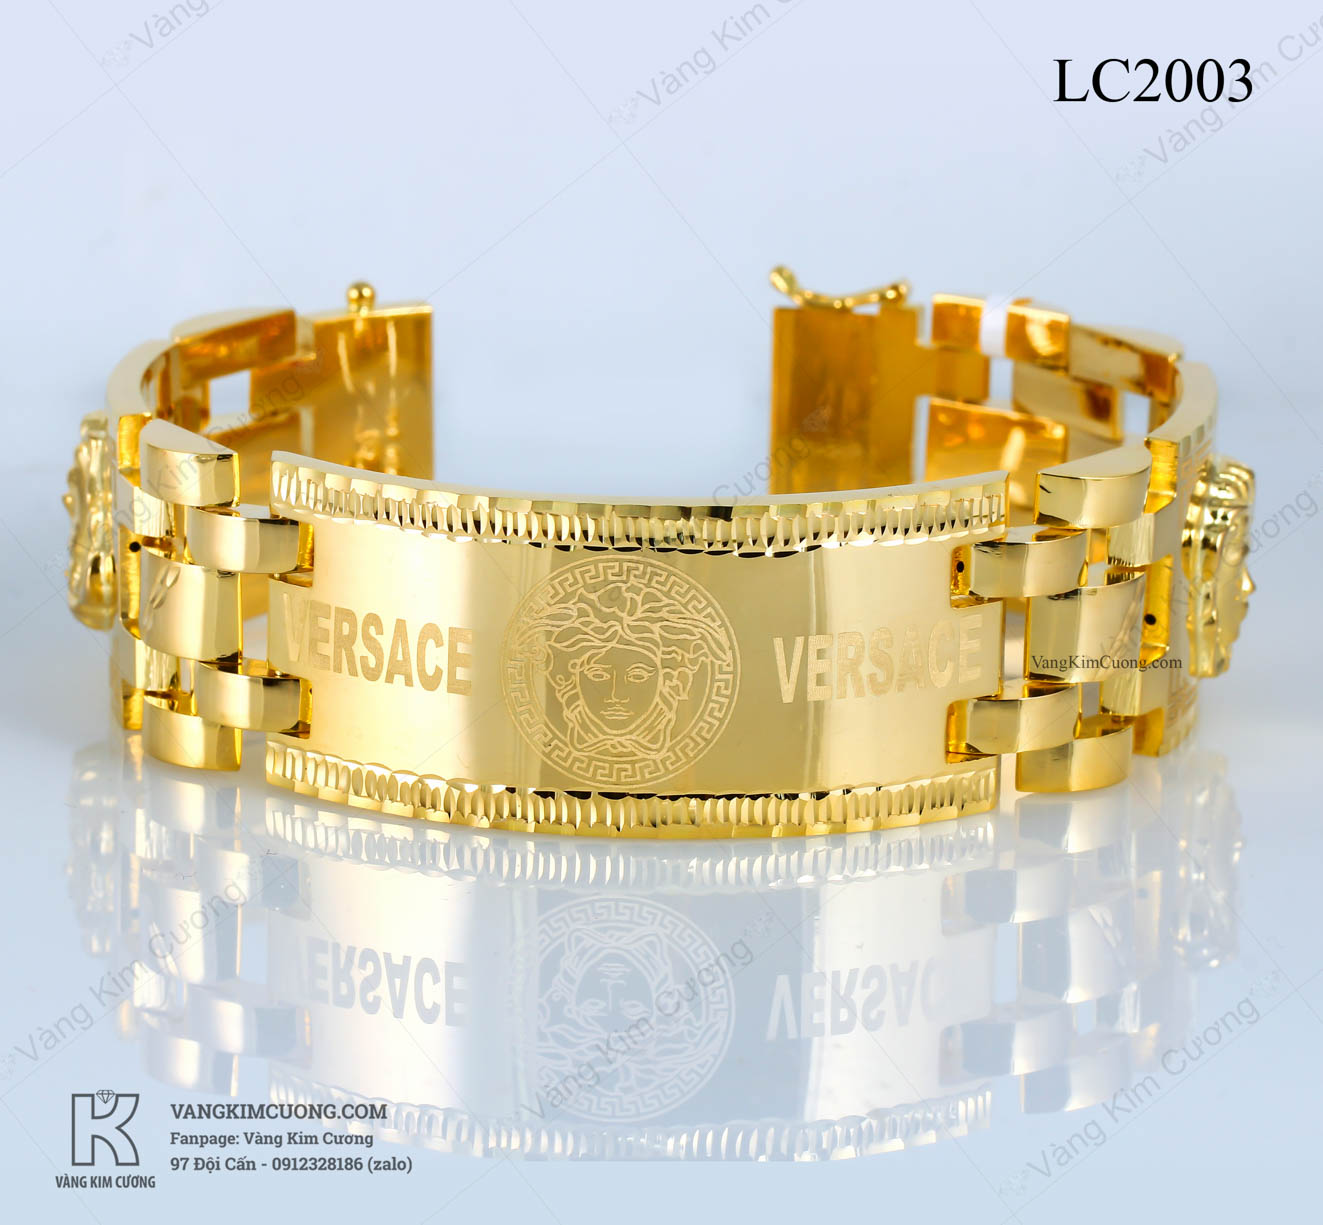 Lắc tay nam vàng 18k cao cấp mã số LC2003 từ thương hiệu Versace được cập nhật đến năm 2024 với thiết kế hoàn hảo, sang trọng, đẳng cấp và nổi bật. Với chất liệu vàng 18k, sản phẩm có độ bền cao, không bị bám bẩn và luôn giữ màu sắc tươi mới. Hãy chiêm ngưỡng đẳng cấp của lắc tay vàng nam từ Versace và truyền tải phong cách cá tính của bạn.